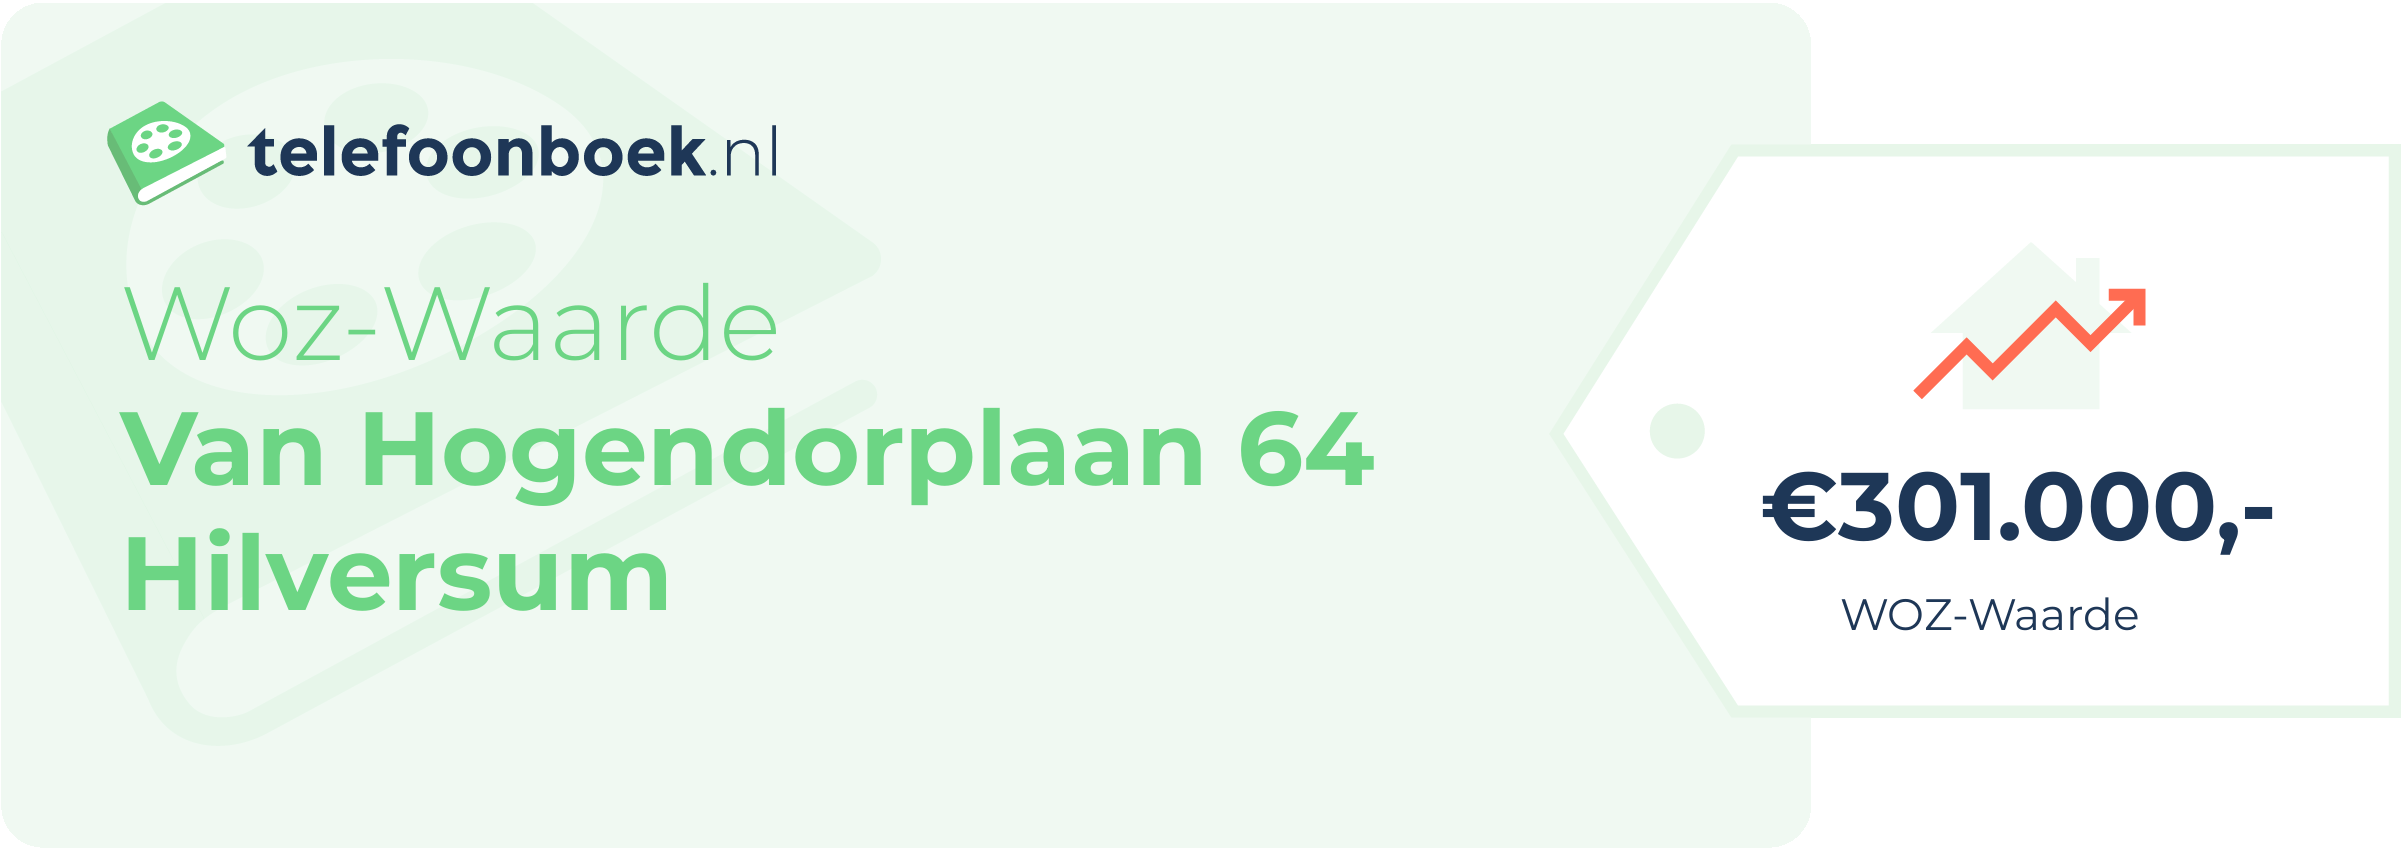 WOZ-waarde Van Hogendorplaan 64 Hilversum